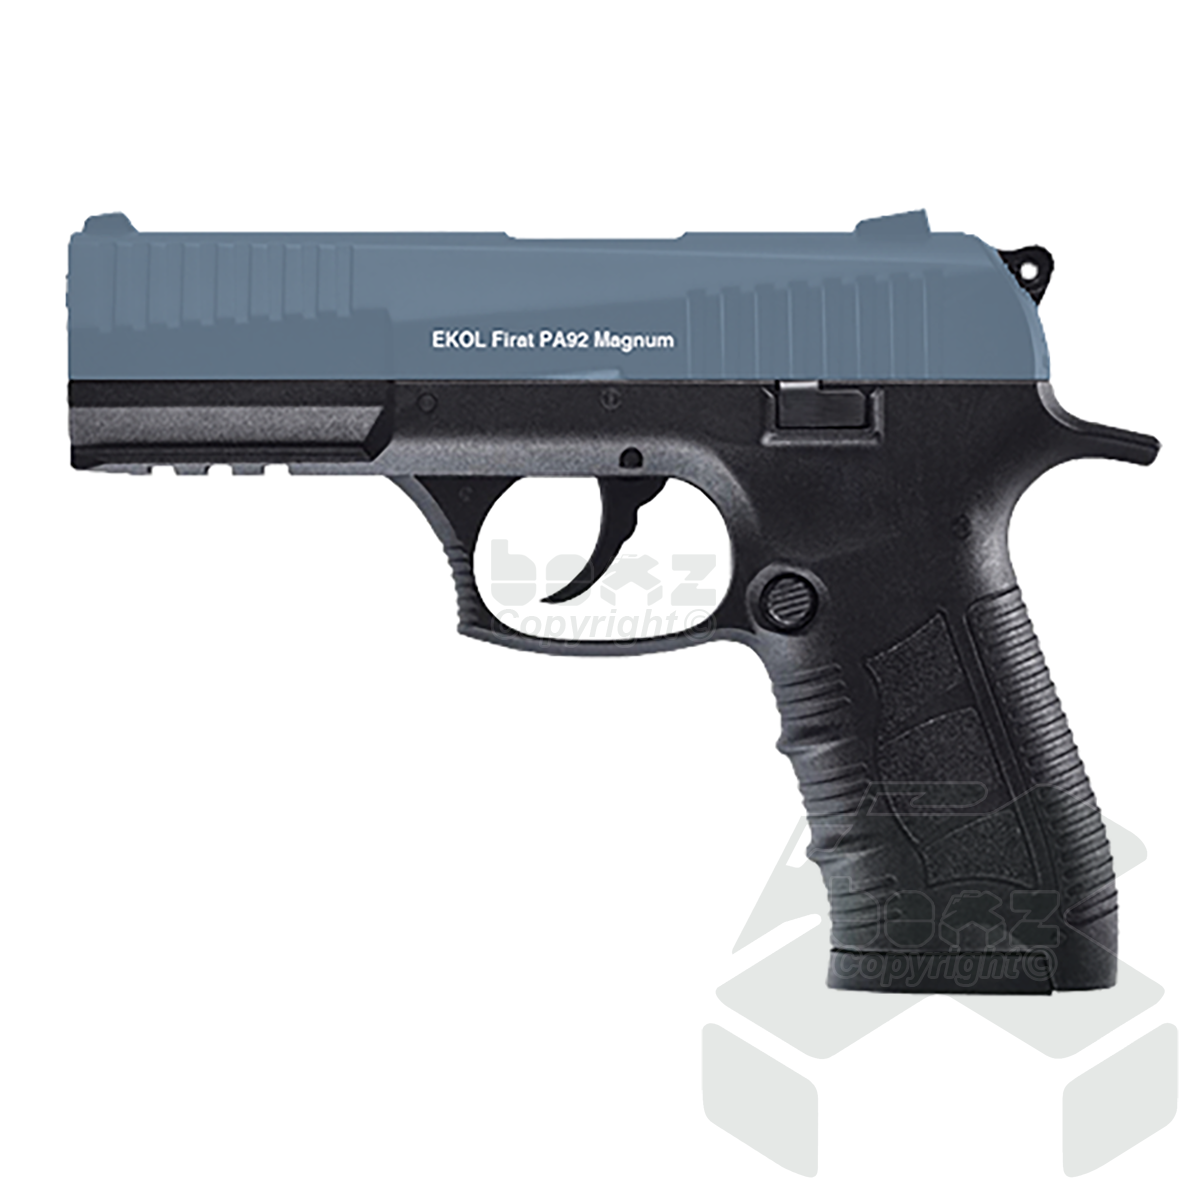 Ekol Firat PA92 Magnum Blank Firing Pistol - 9mm